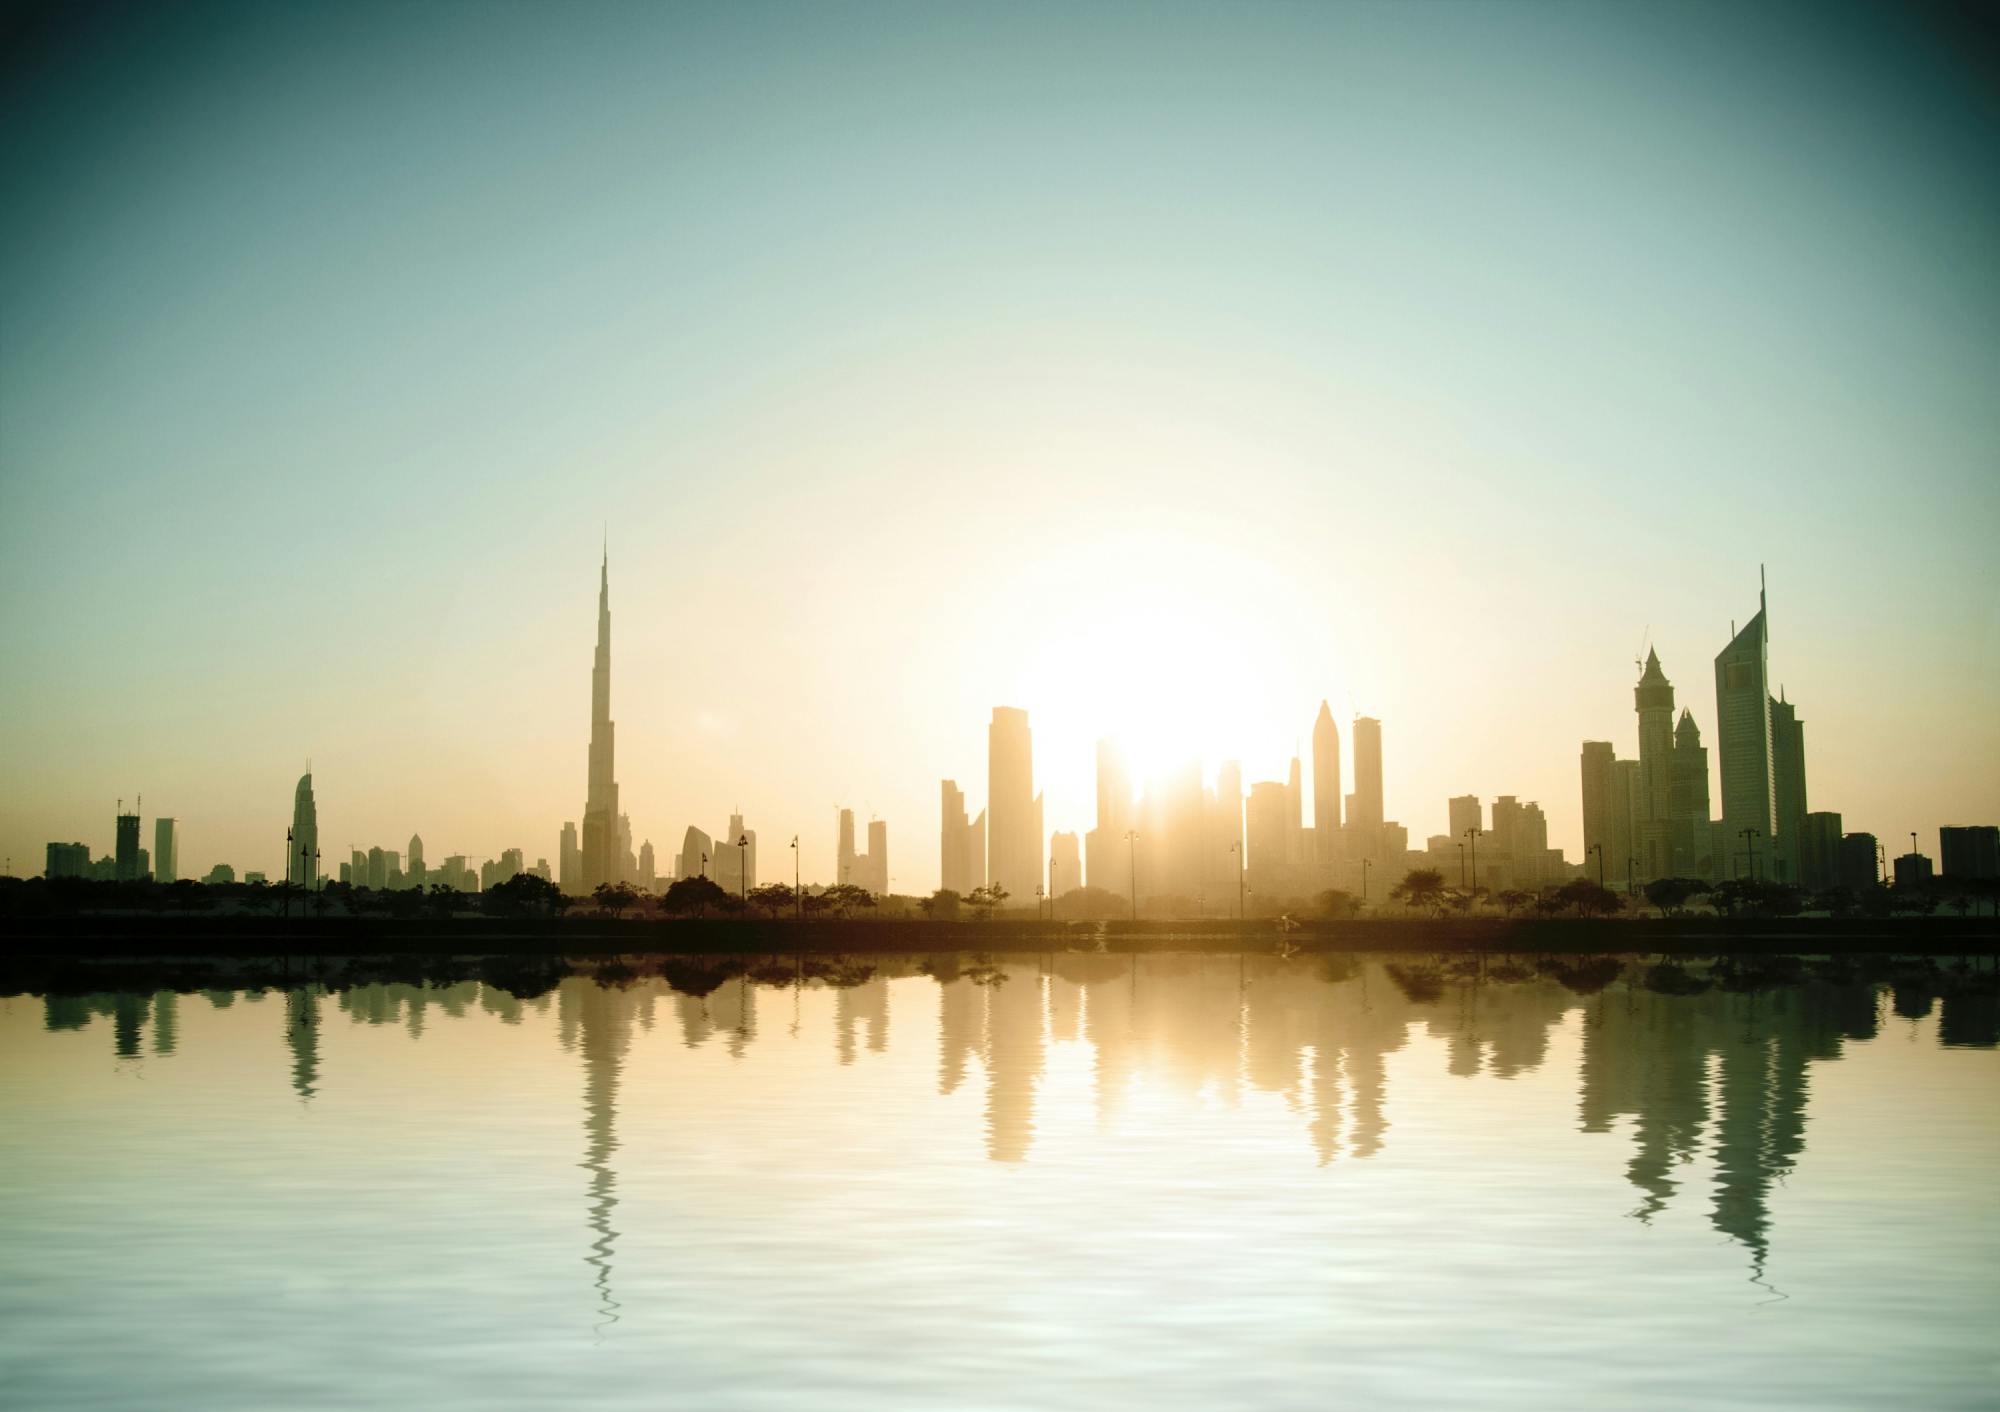 Dubai City podkreśla całodniową wycieczkę eksploracyjną